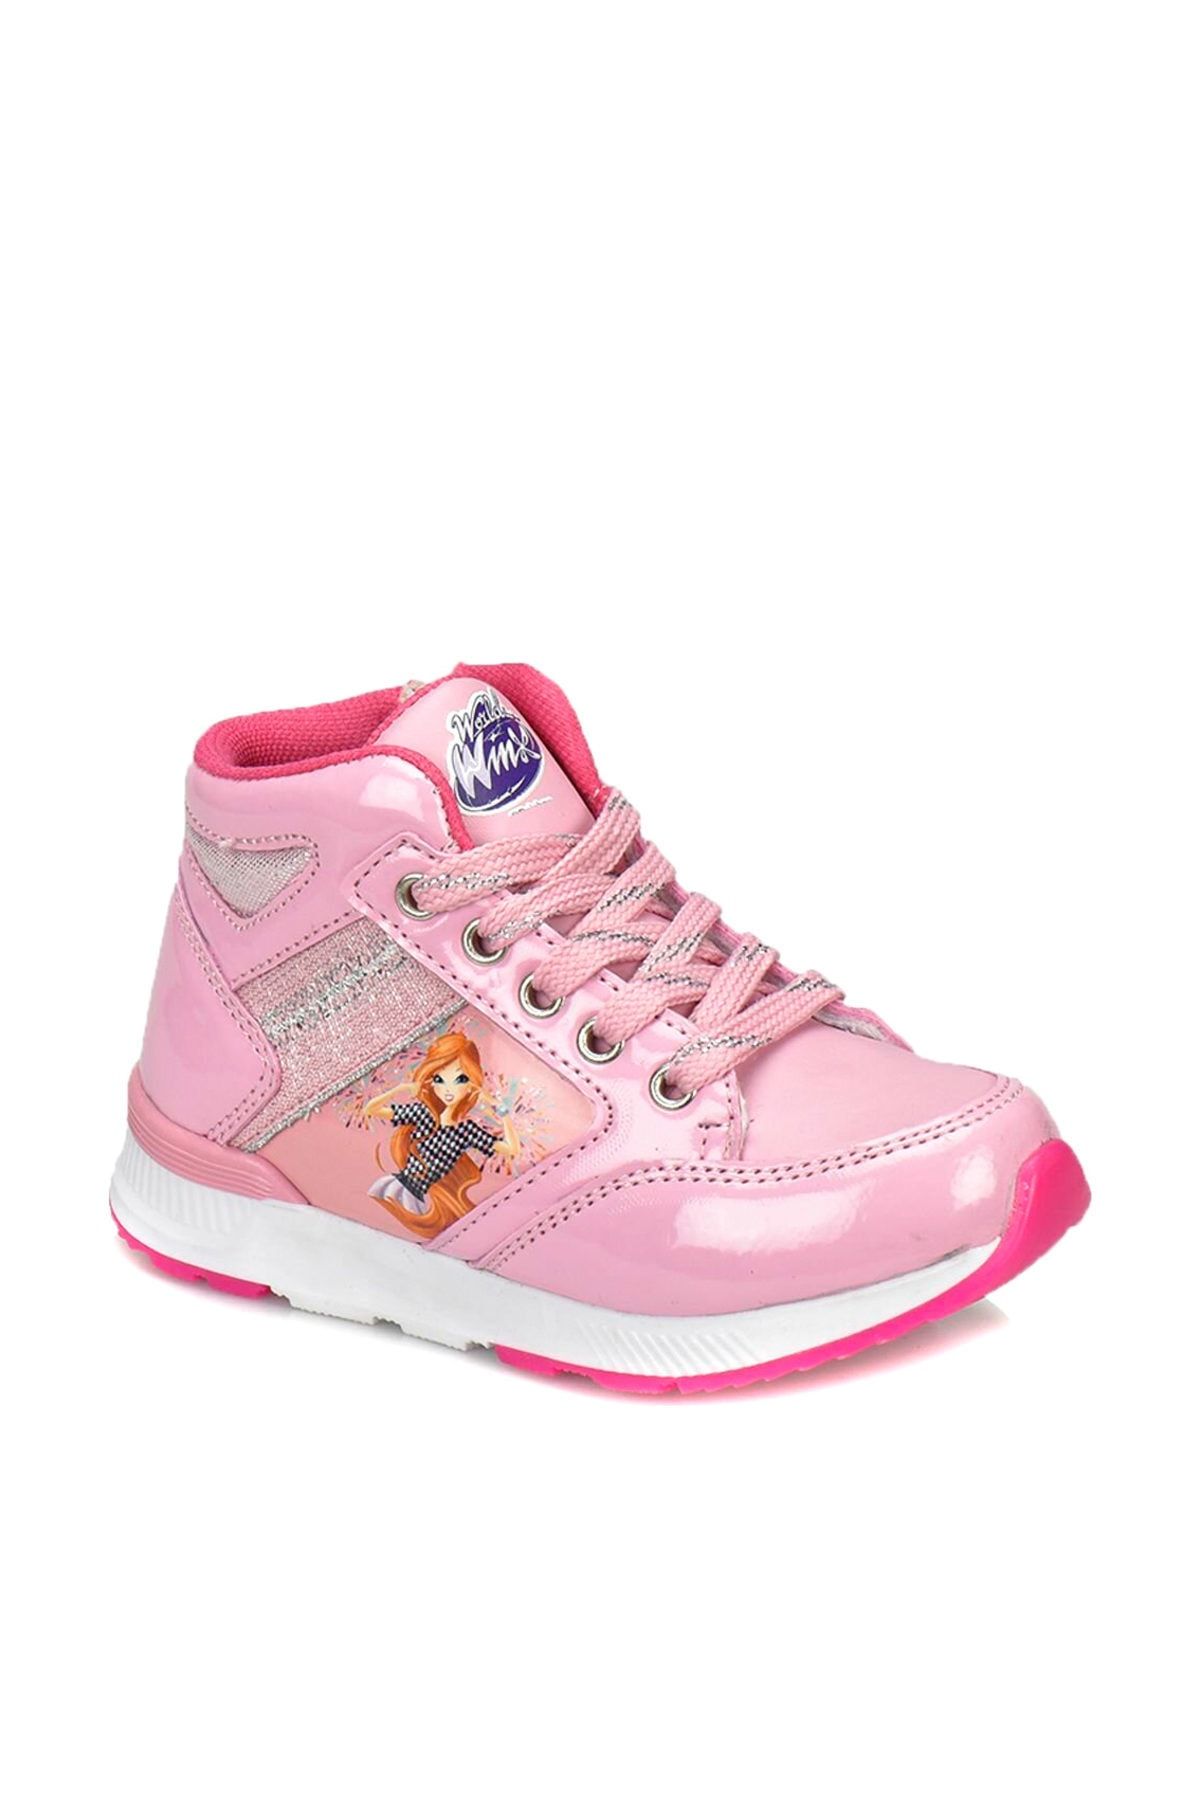 Winx Ola Pembe Kız Çocuk Sneaker Ayakkabı 100337630